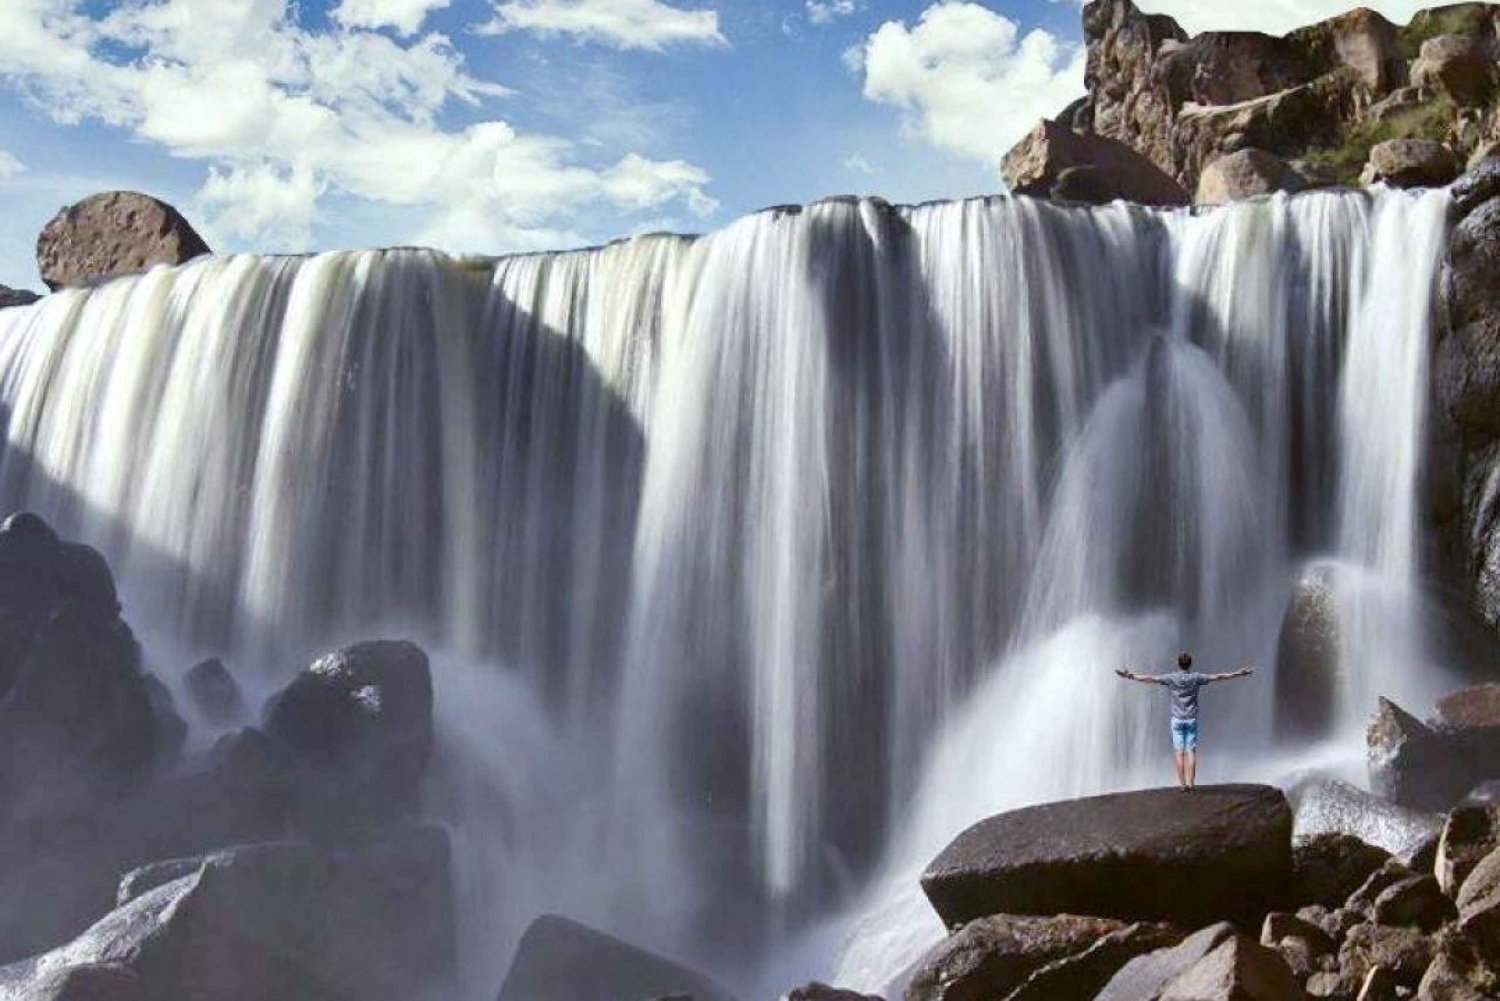 Från Arequipa: Utflykt till Pillones vattenfall || Ful dag||